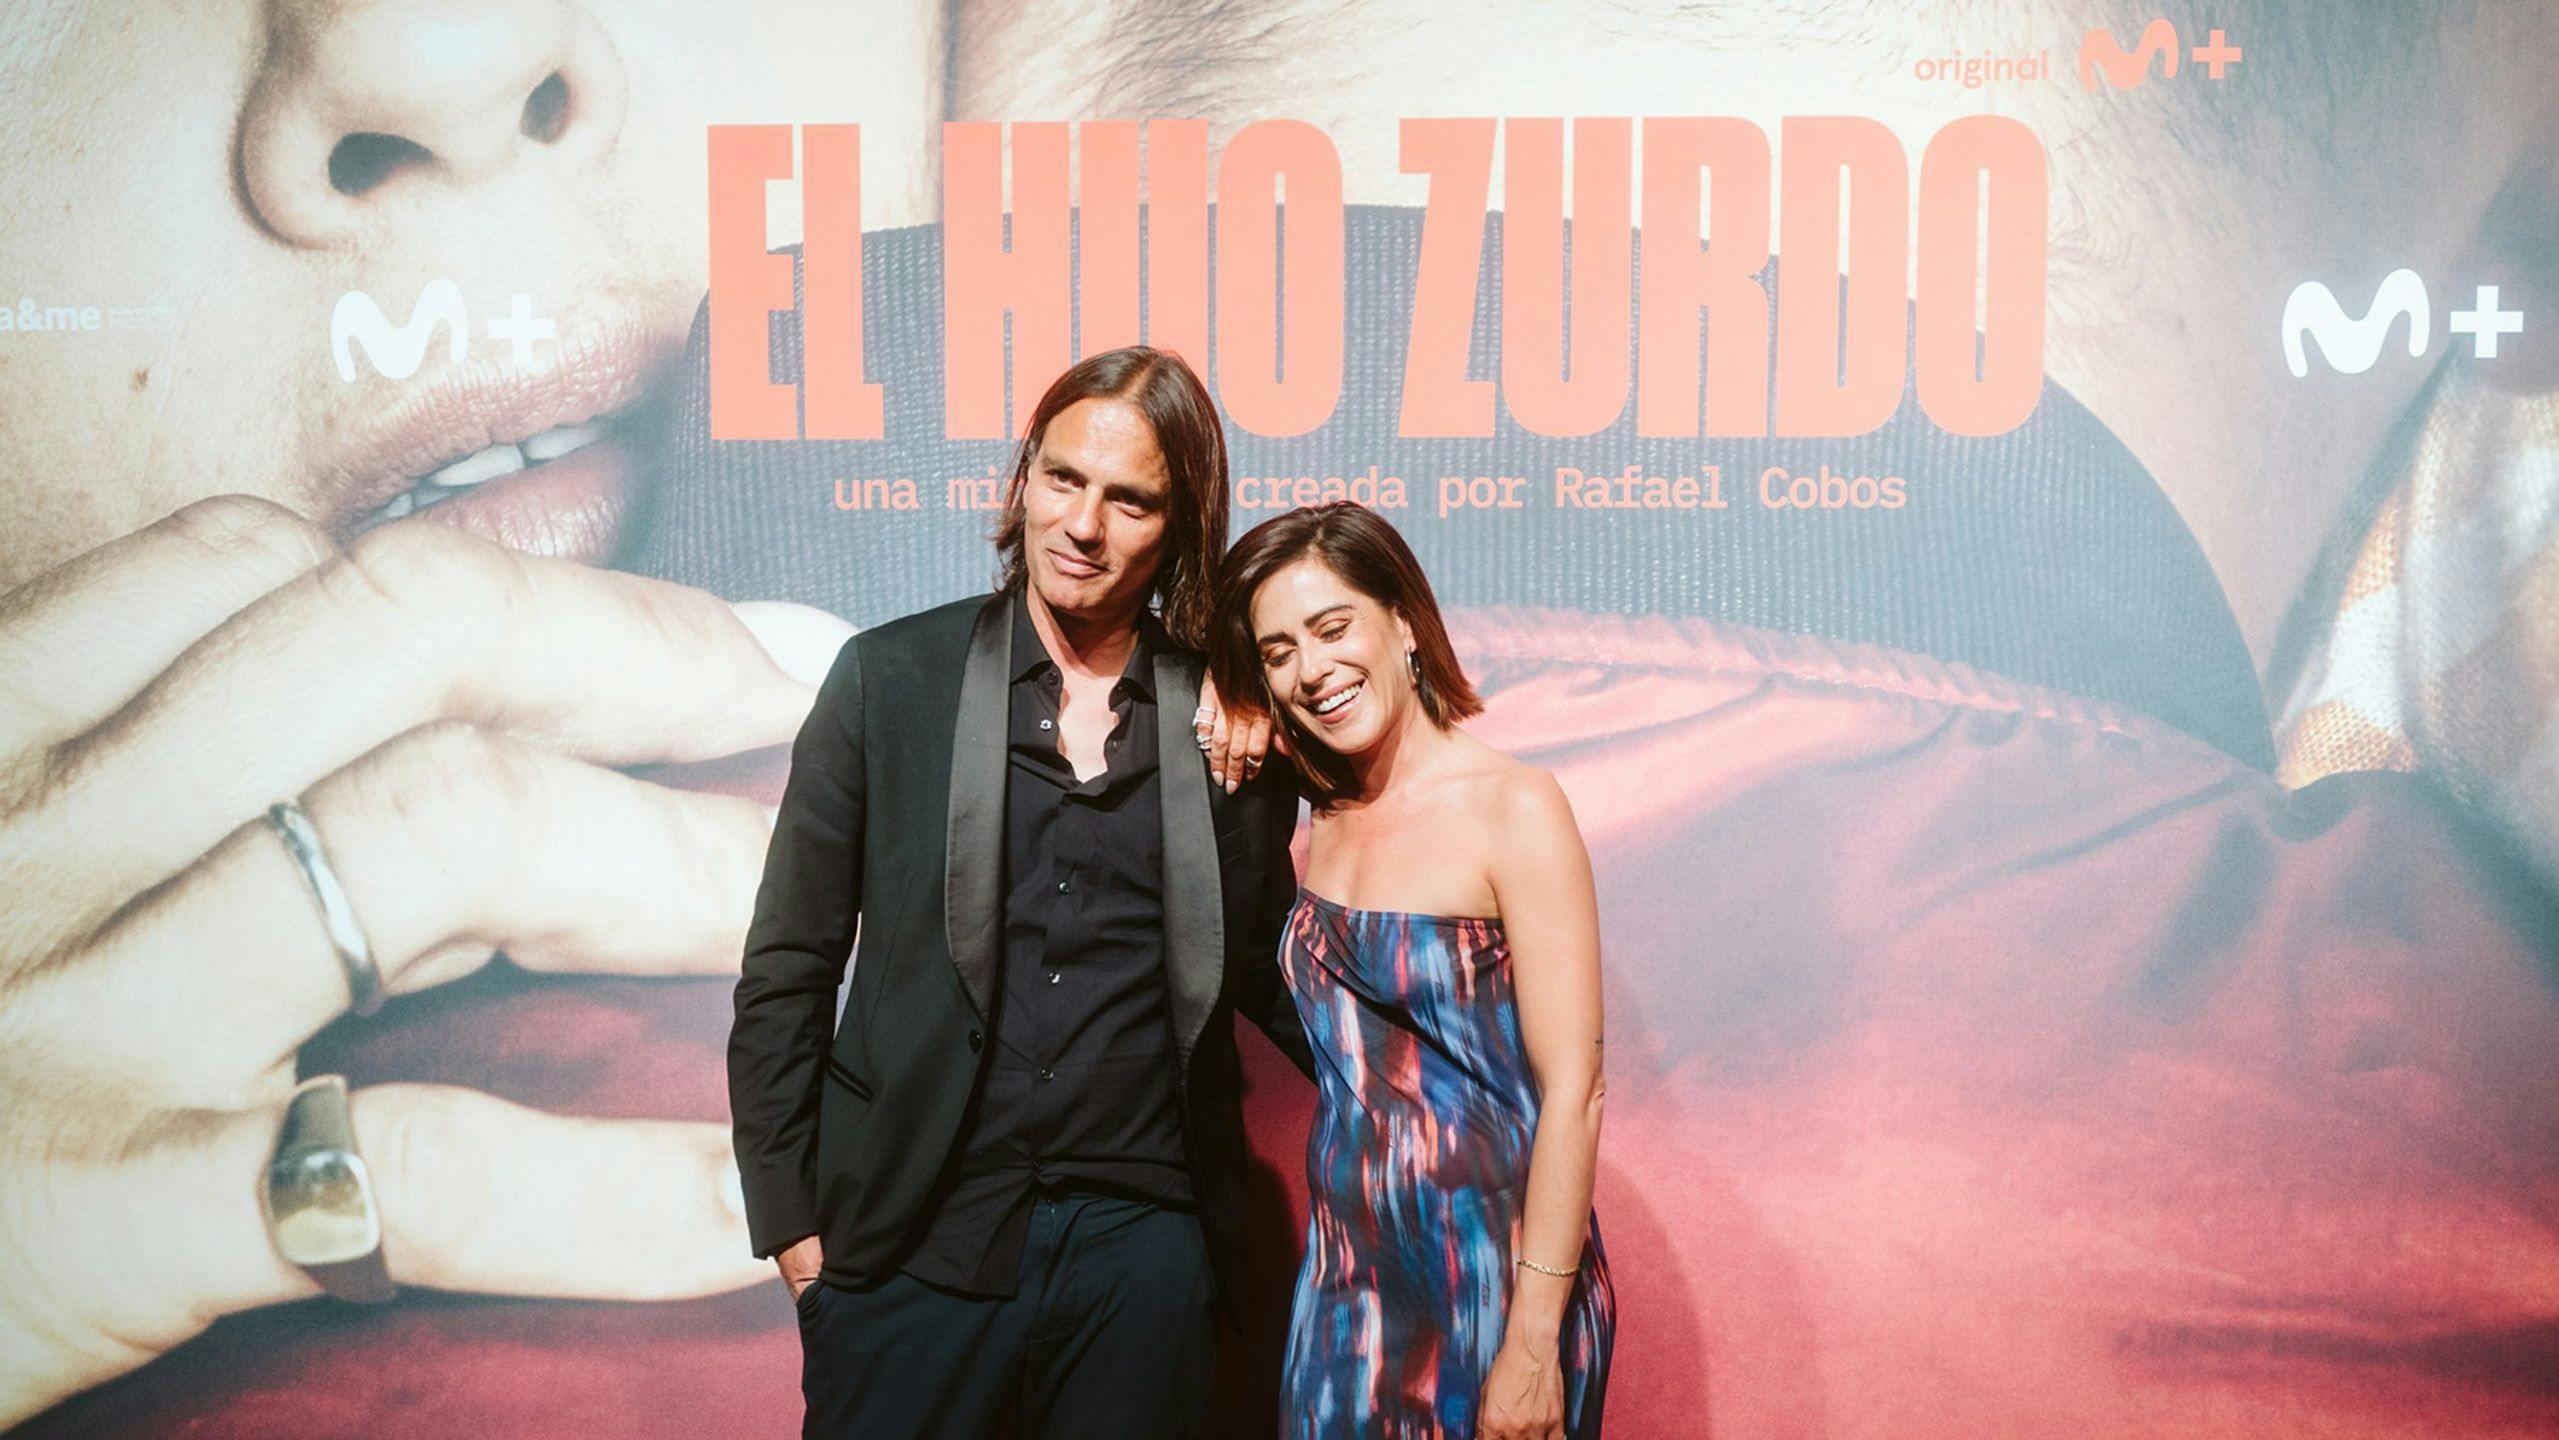 María León y Rafael Cobos en el estreno en Sevilla de la serie 'El hijo zurdo'